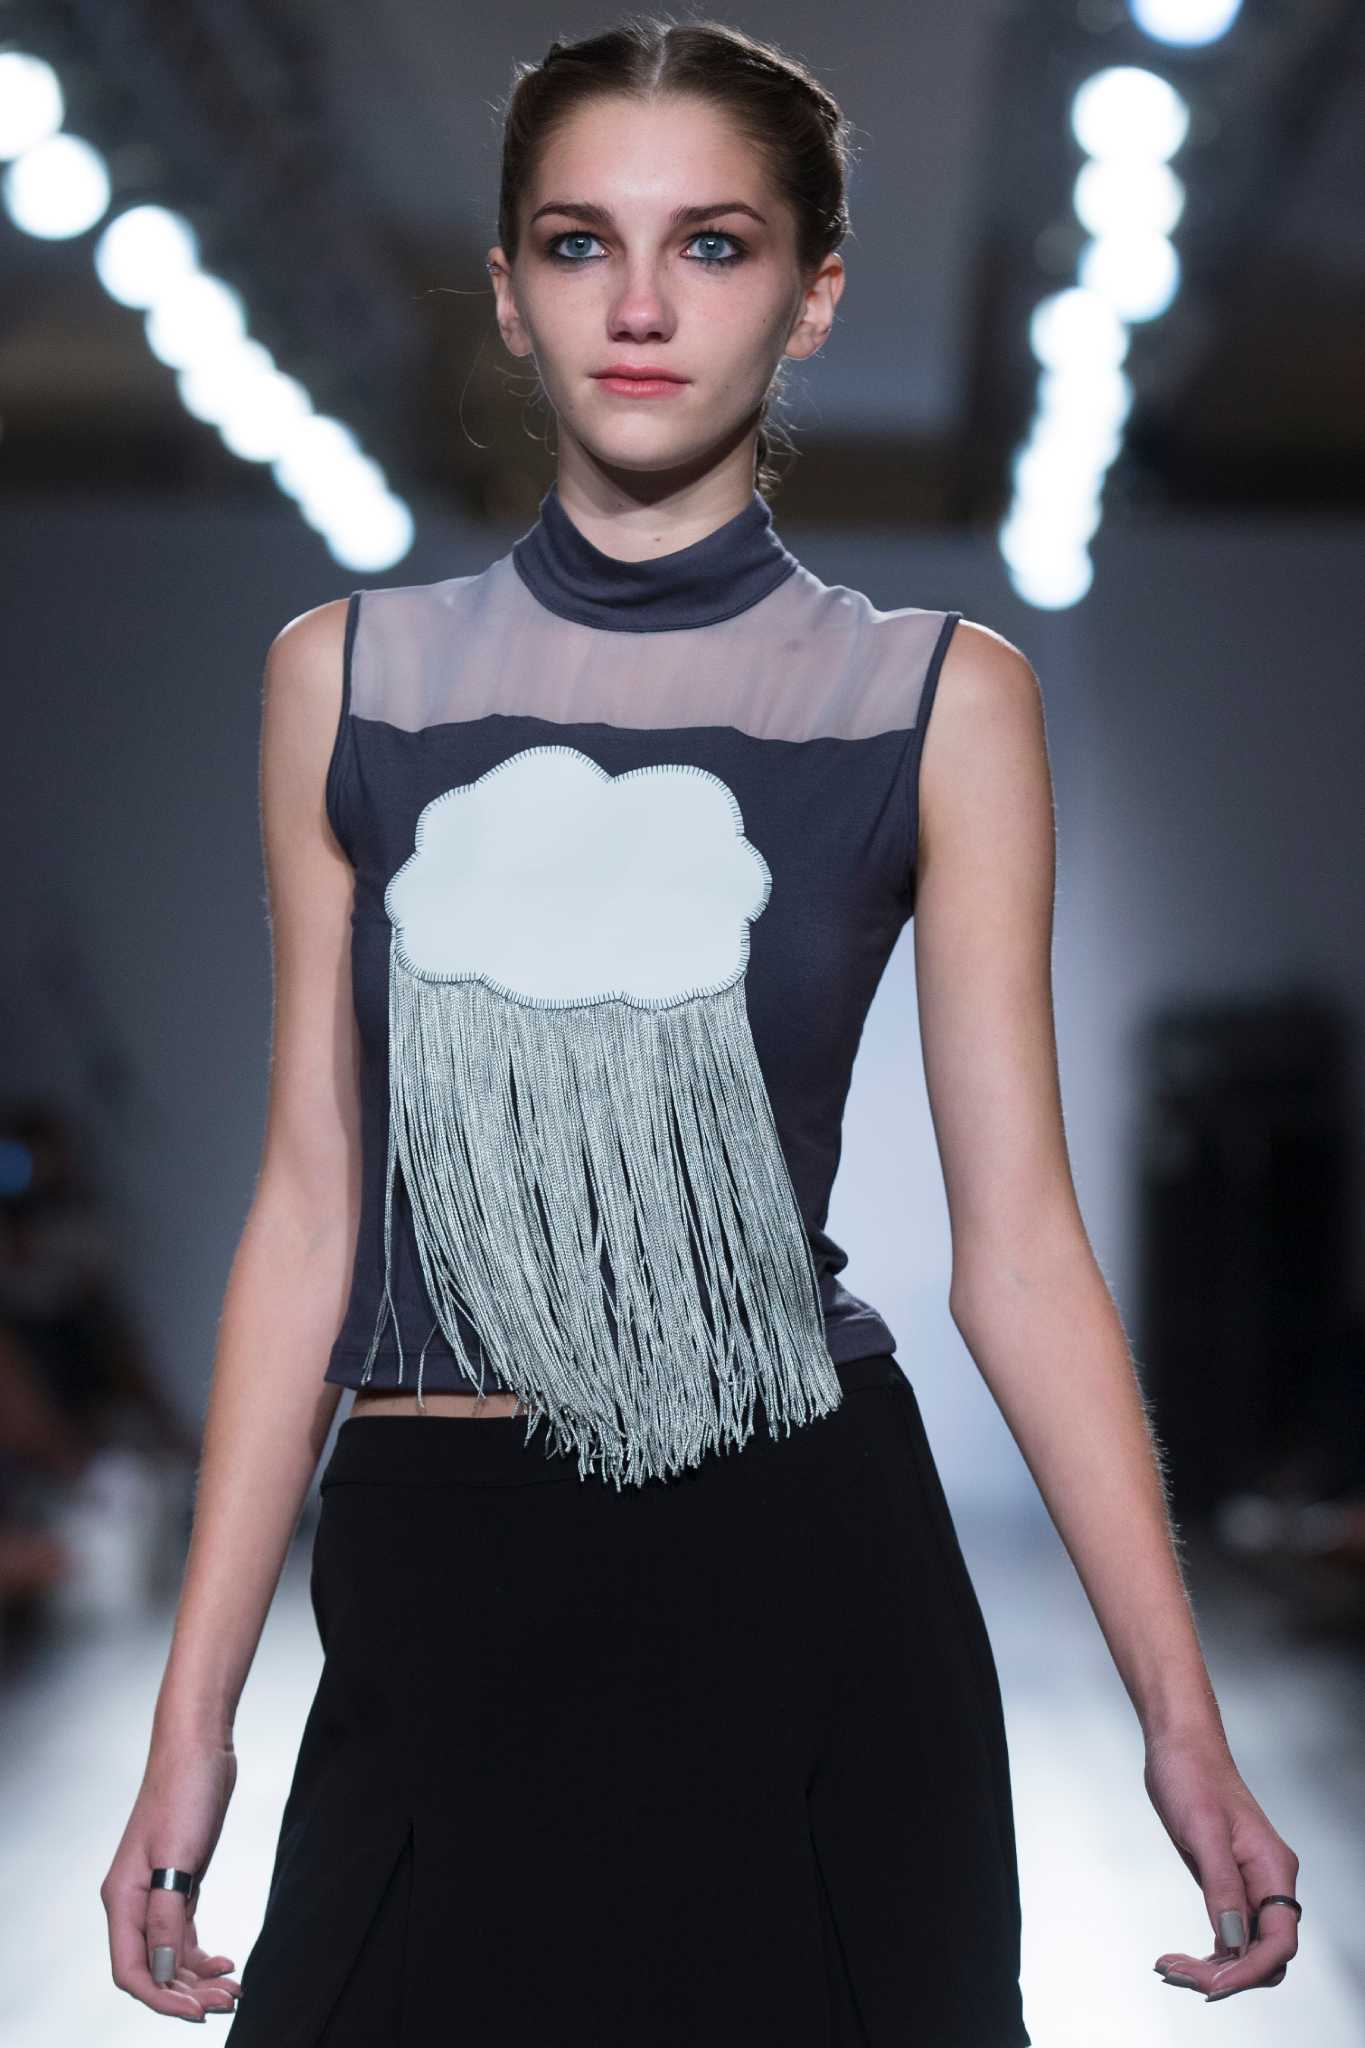 13yearold designer puts on NY Fashion Week show Houston Chronicle